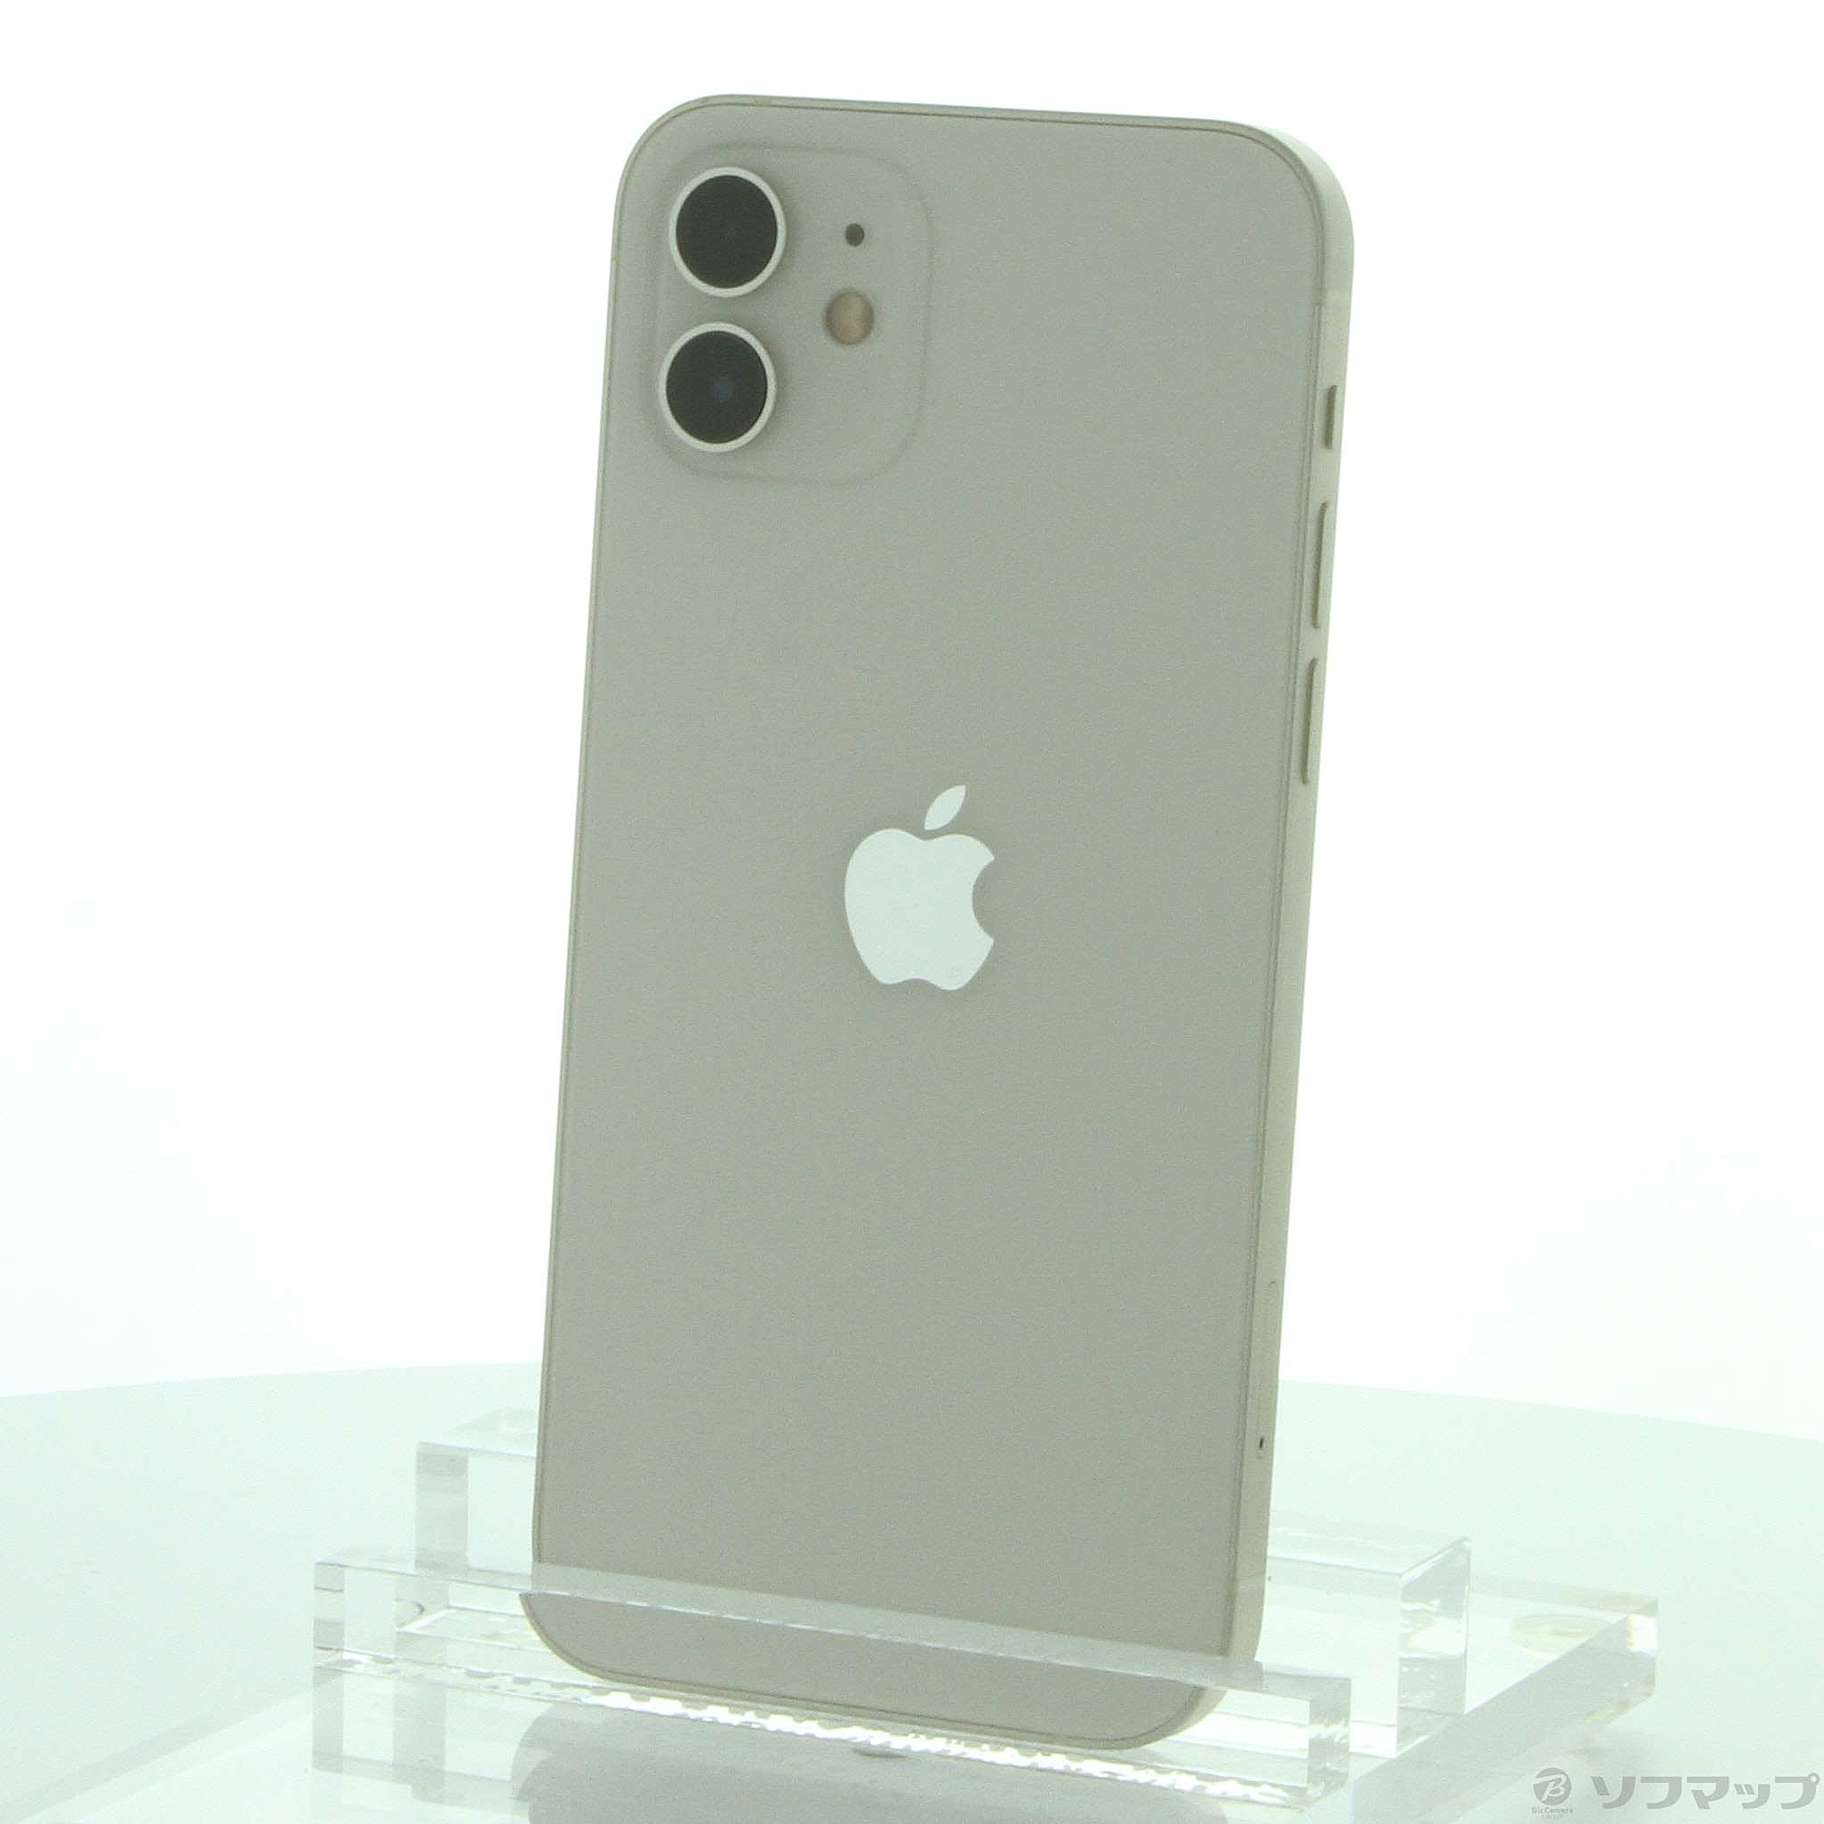 iPhone12 ホワイト 128GBSIMフリー - スマートフォン本体